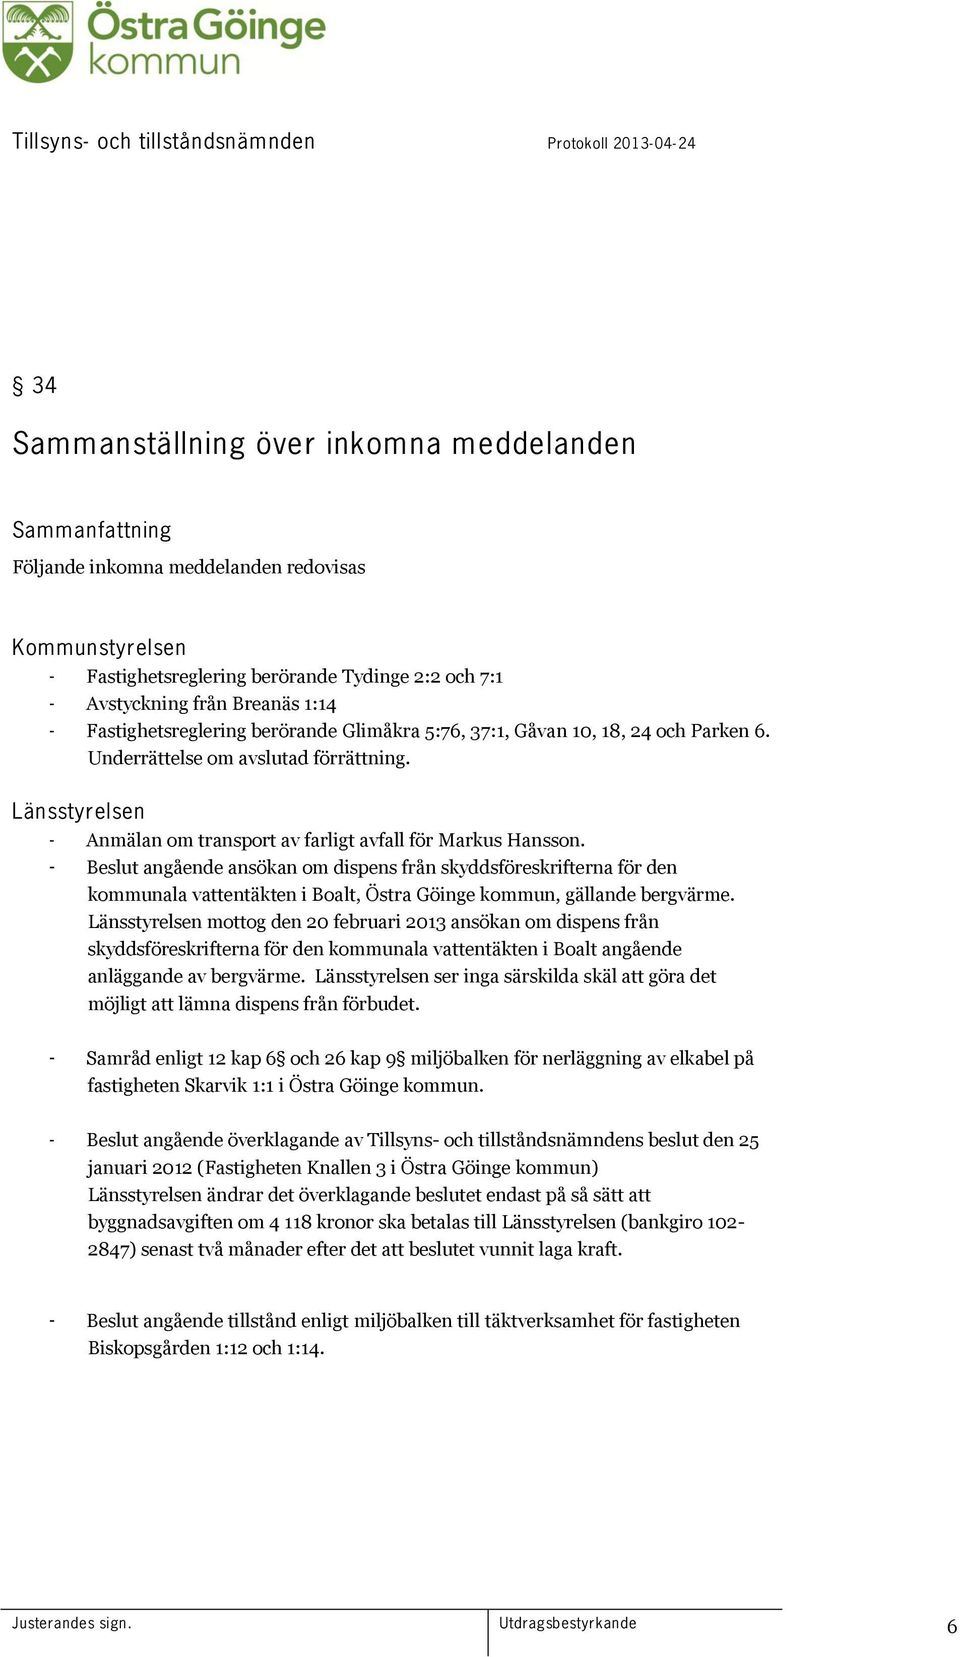 - Beslut angående ansökan om dispens från skyddsföreskrifterna för den kommunala vattentäkten i Boalt, Östra Göinge kommun, gällande bergvärme.